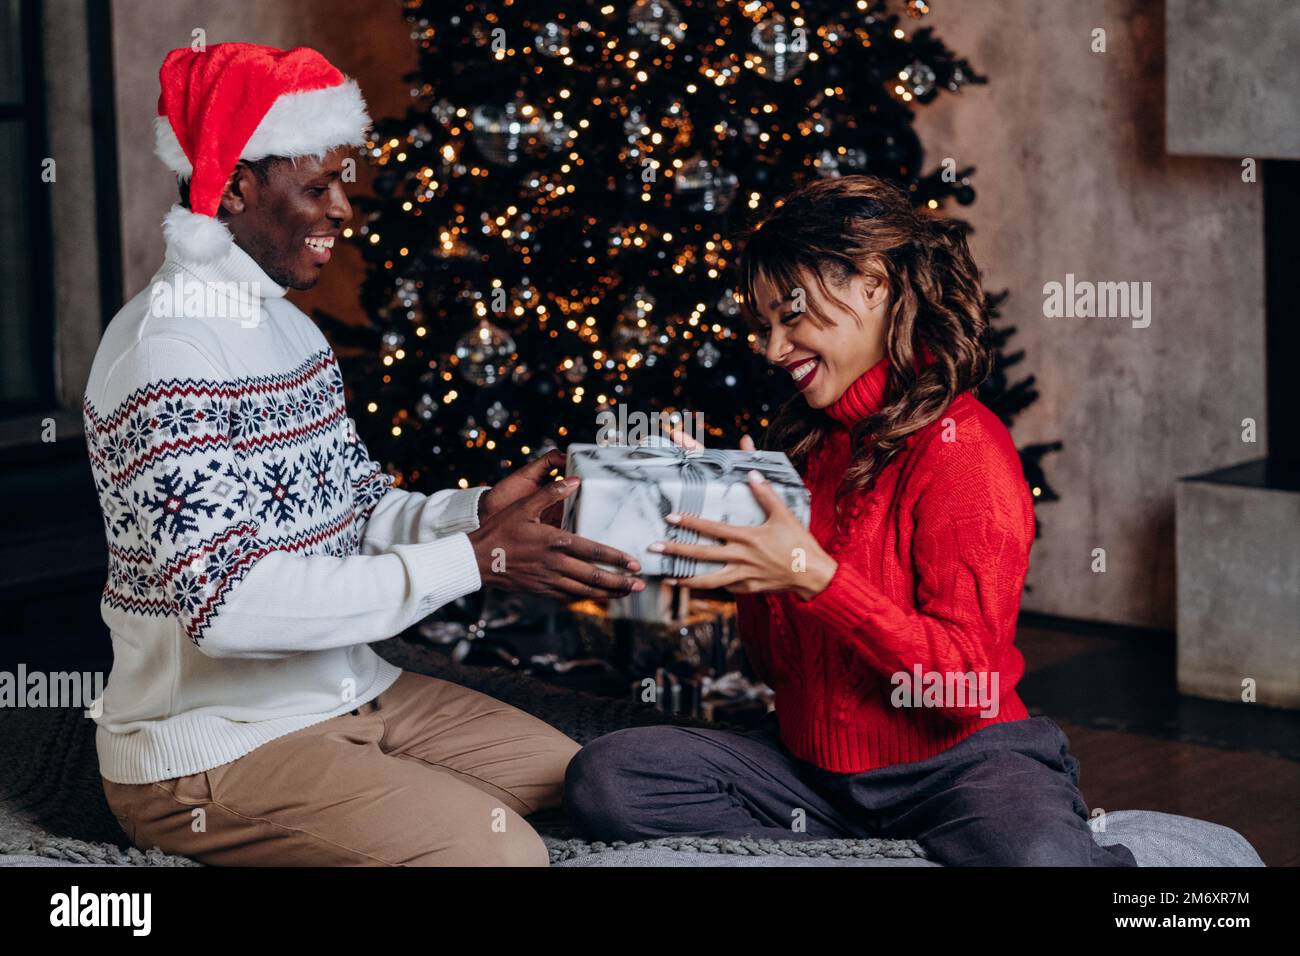 Ein afroamerikanischer Mann mit Weihnachtsmann-Hut überrascht eine langhaarige Freundin mit einem Geschenk, das auf dem Boden neben einem dekorierten Weihnachtsbaum sitzt Stockfoto